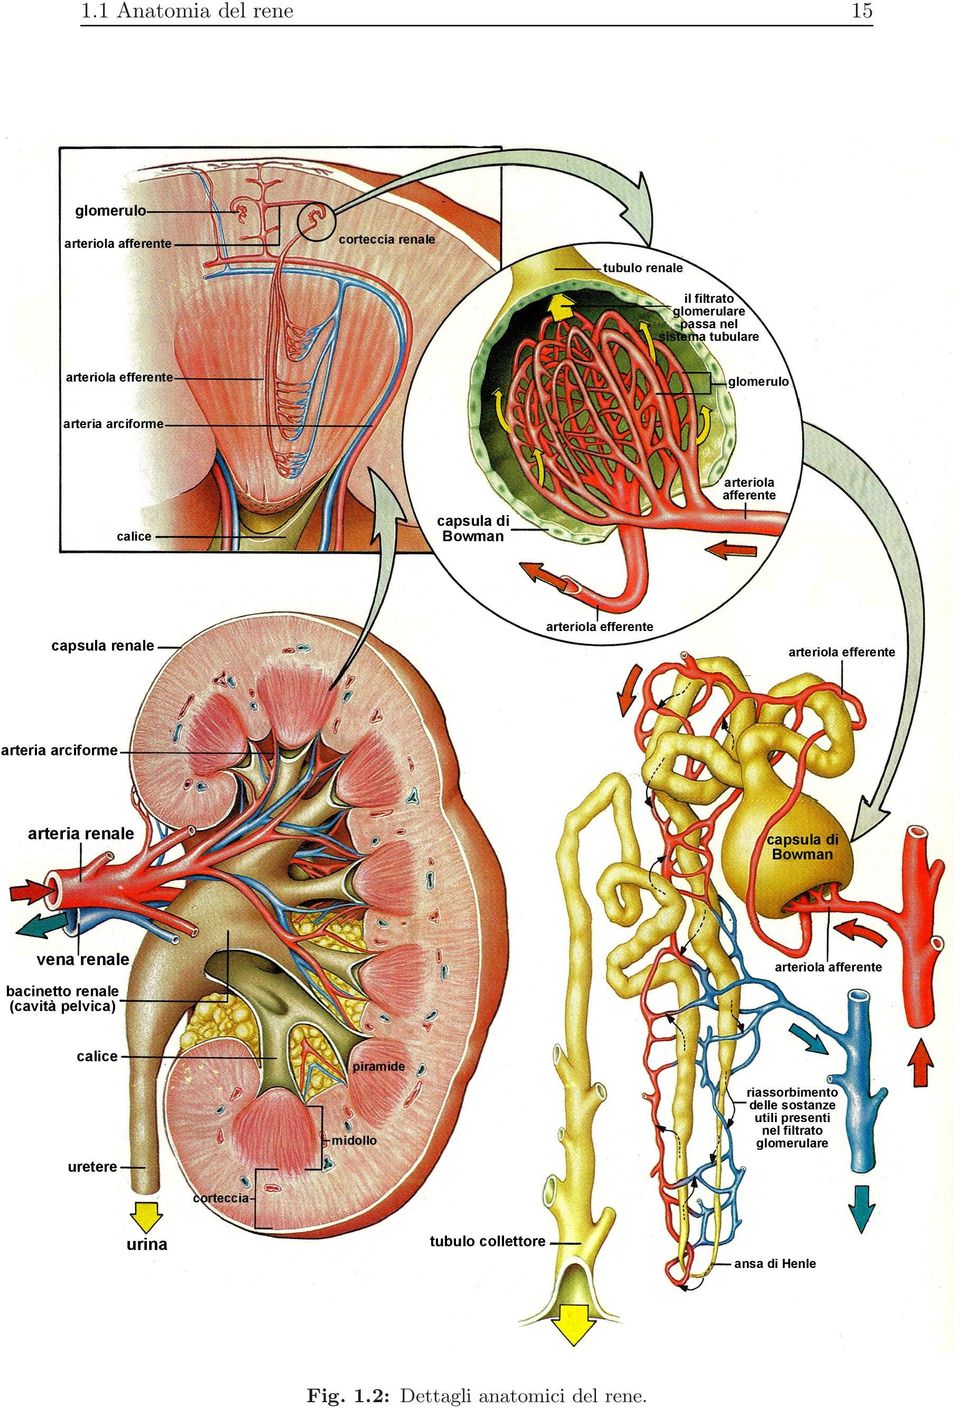 arciforme arteria renale capsula di Bowman vena renale arteriola afferente bacinetto renale (cavità pelvica) calice piramide riassorbimento delle